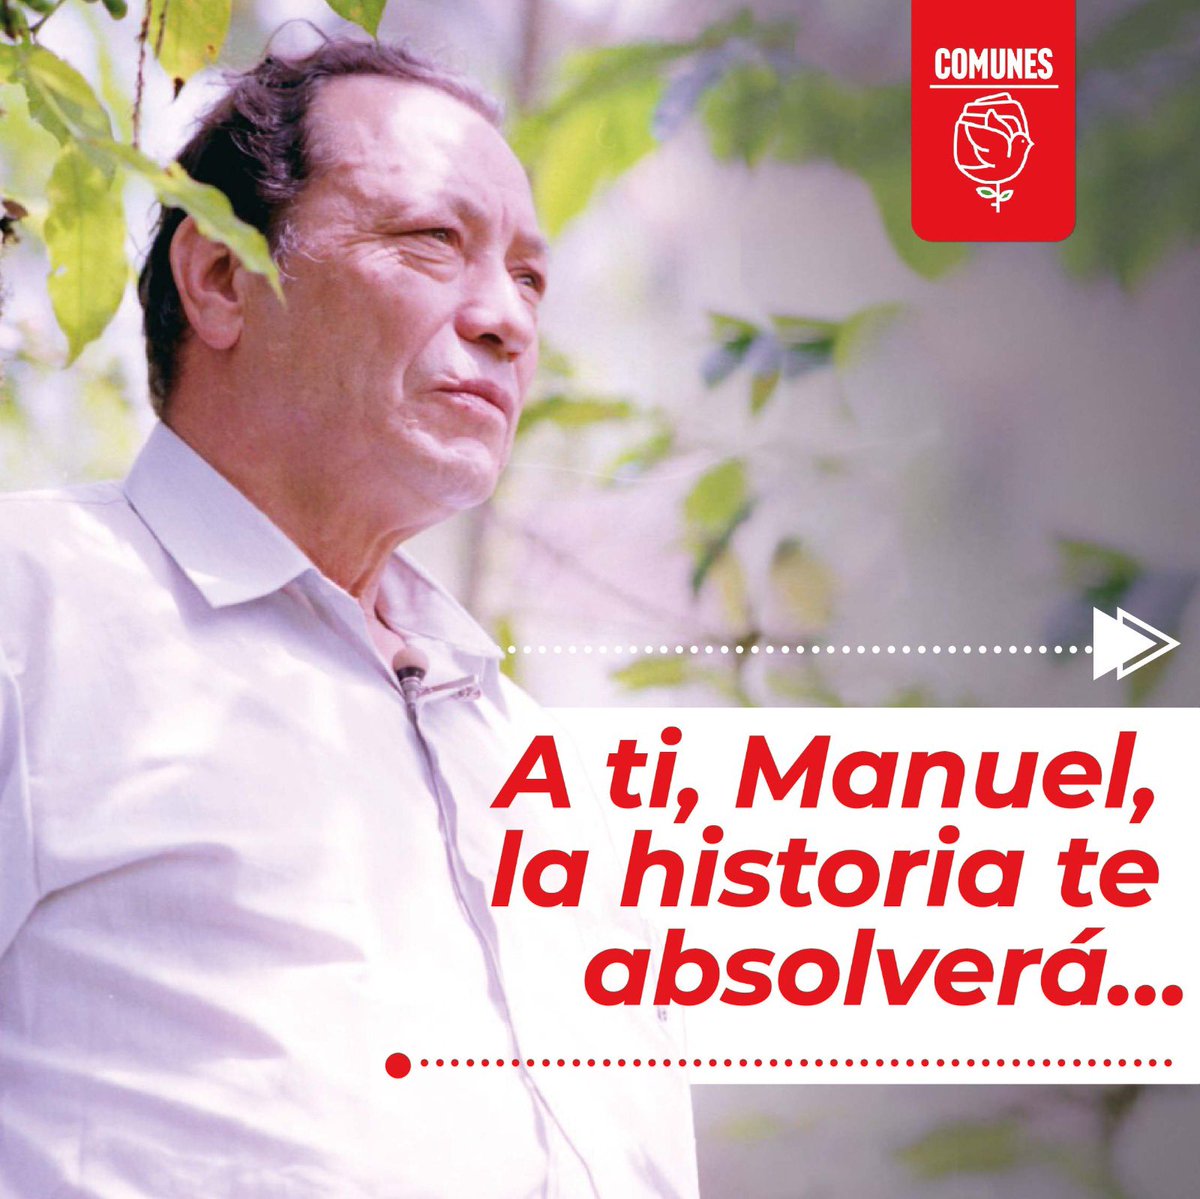 A Manuel, el campesino valiente que se enfrentó a la violencia gamonalista, le rendimos homenaje porque es la tarea de todo revolucionario. La historia se encargará de darle el lugar que merece por su legado ✊🏻🌹🇨🇴